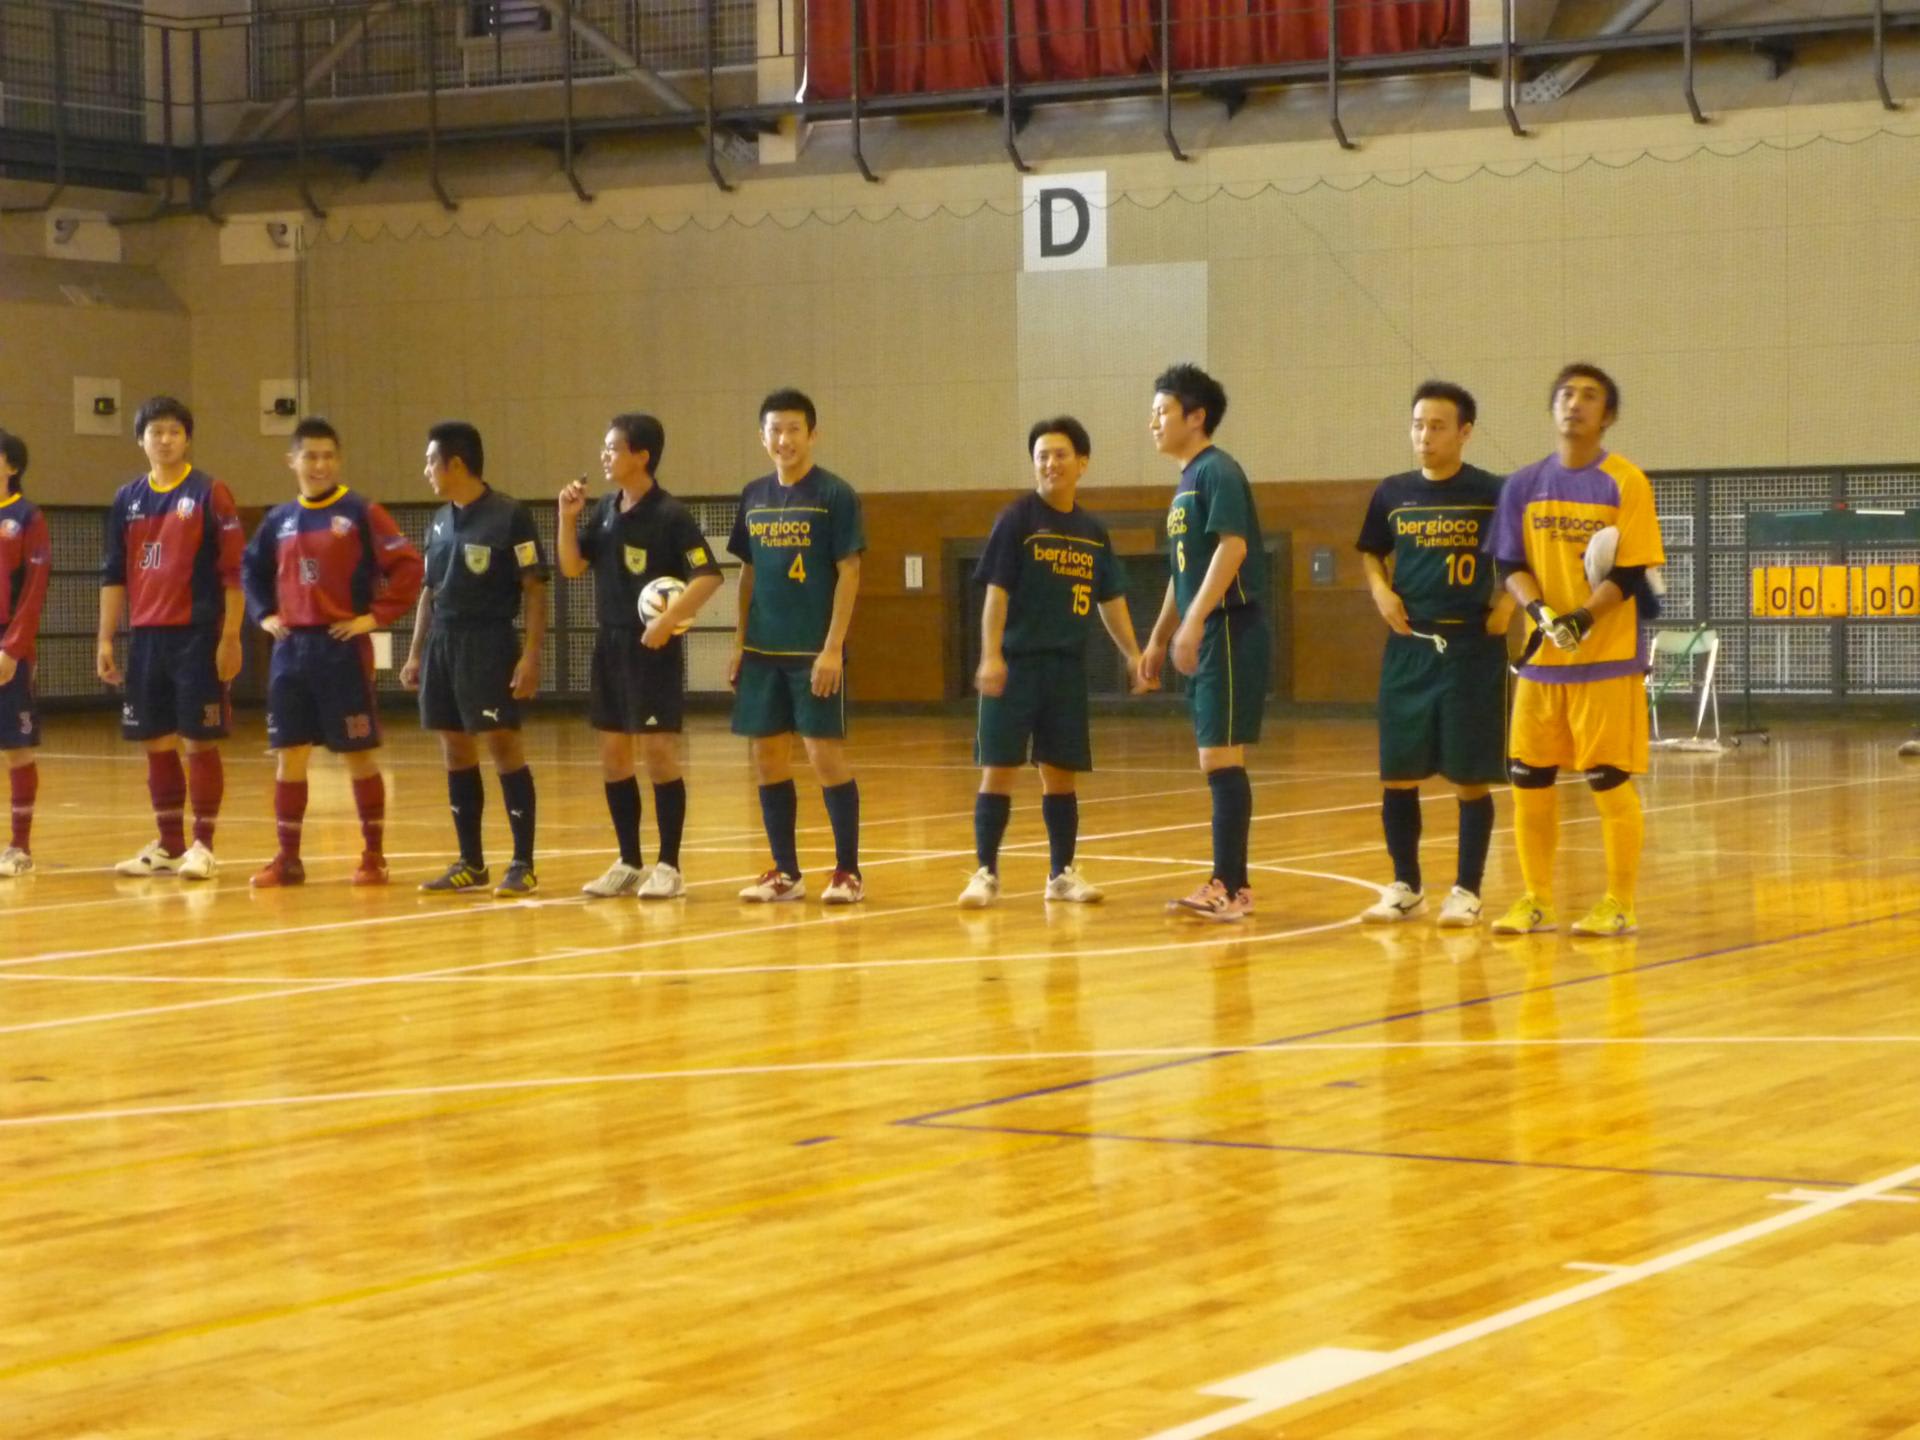 第１３回秋田県社会人フットサルリーグ１部リーグ 第６節 Ber Gioco Futsal Club ｖｓ Fc Amador 謹賀新年 新年あけましておめでとうございます